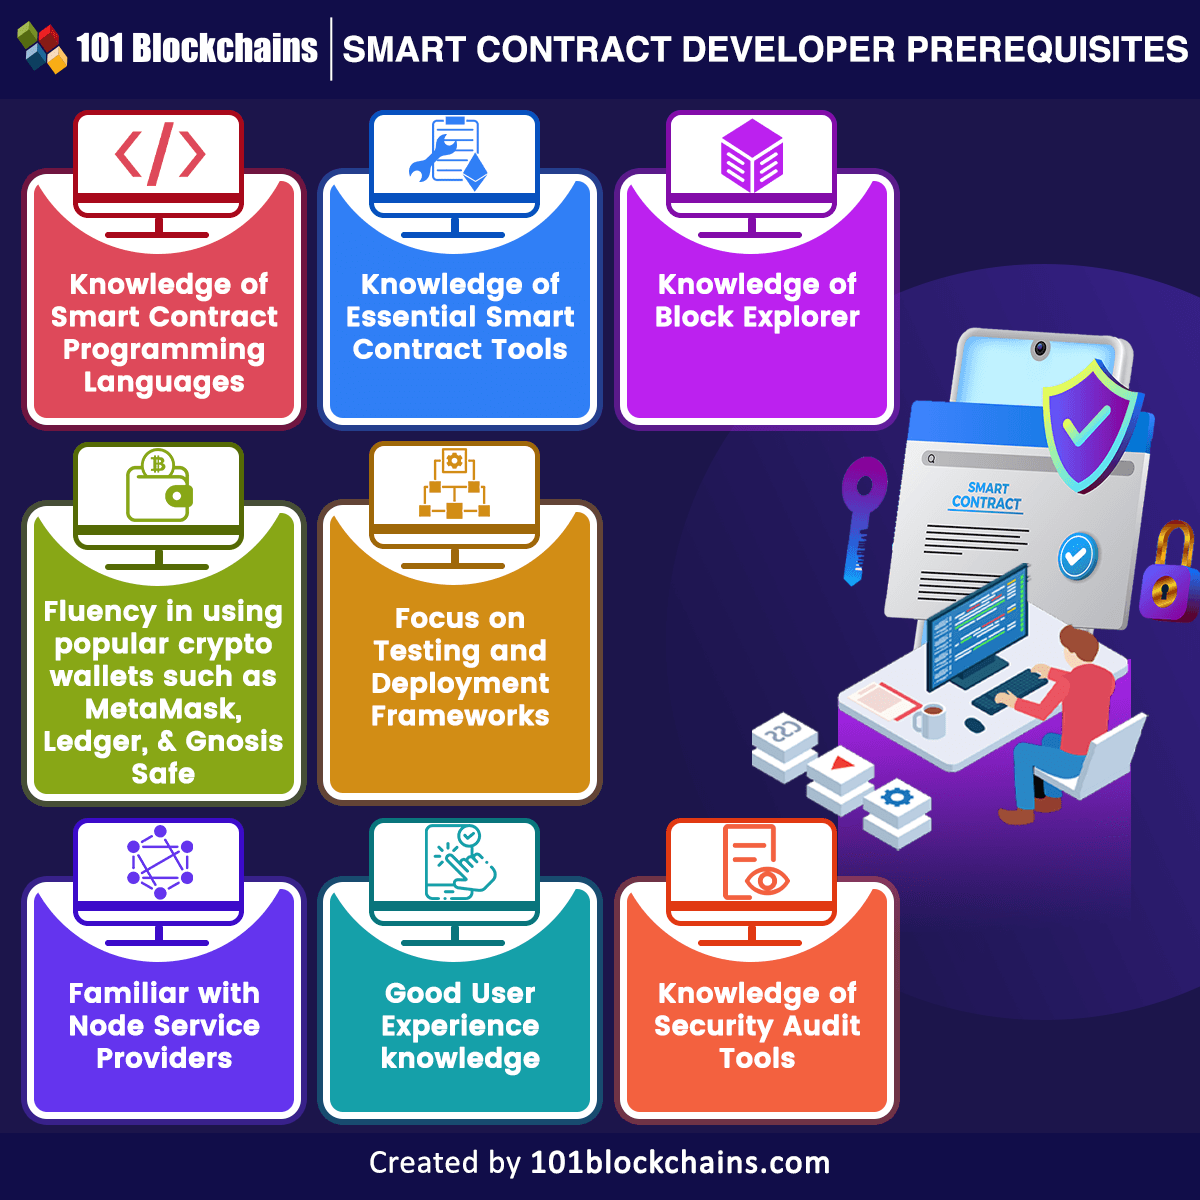 Smart Contract Developer prerequisites=